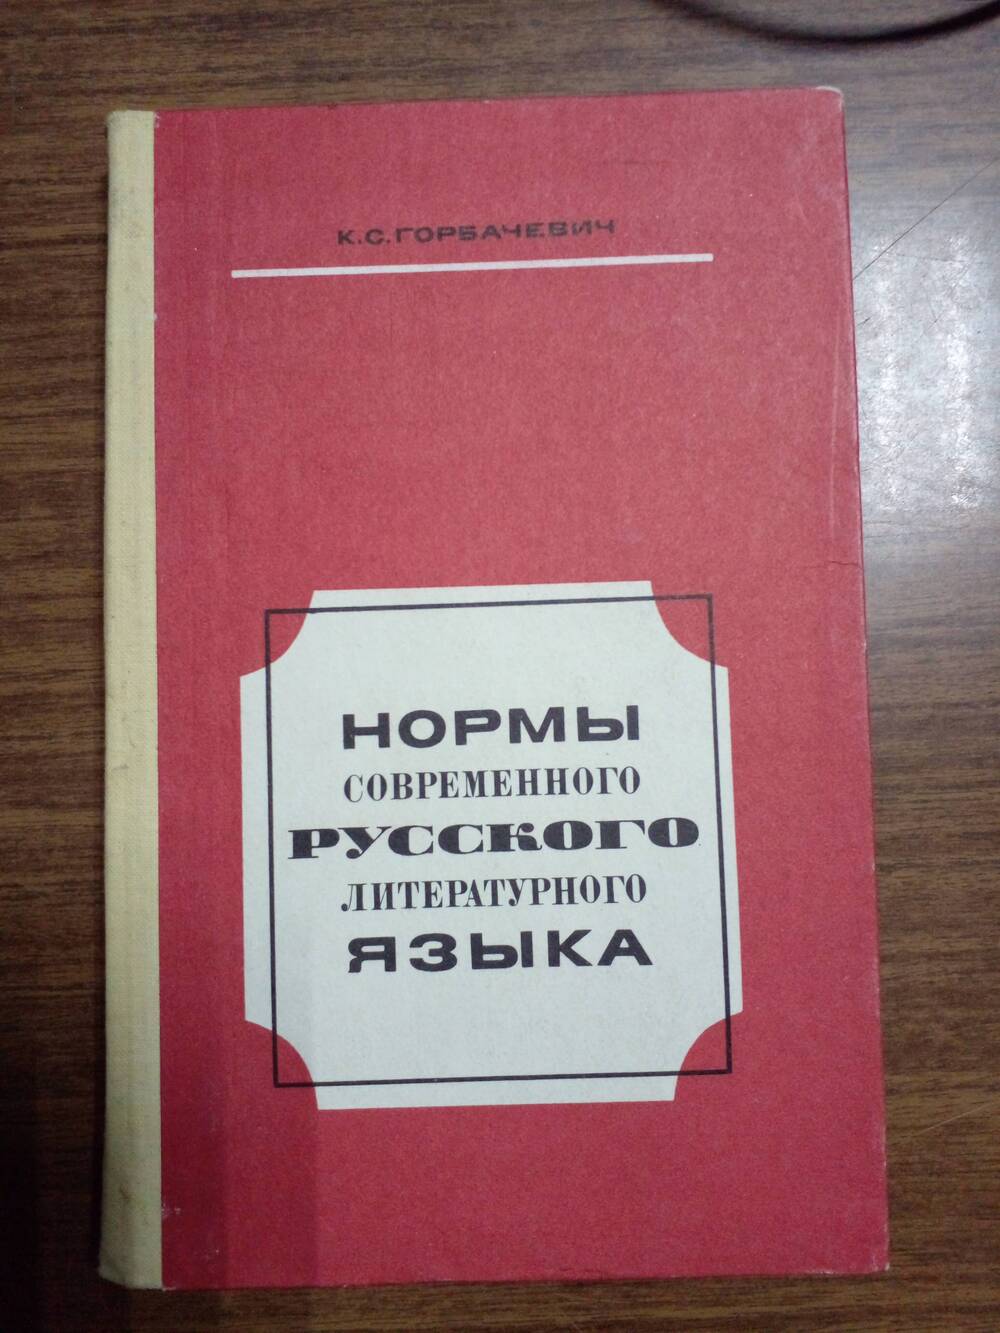 Книга «Нормы современного русского литературного языка», пособие для учителя